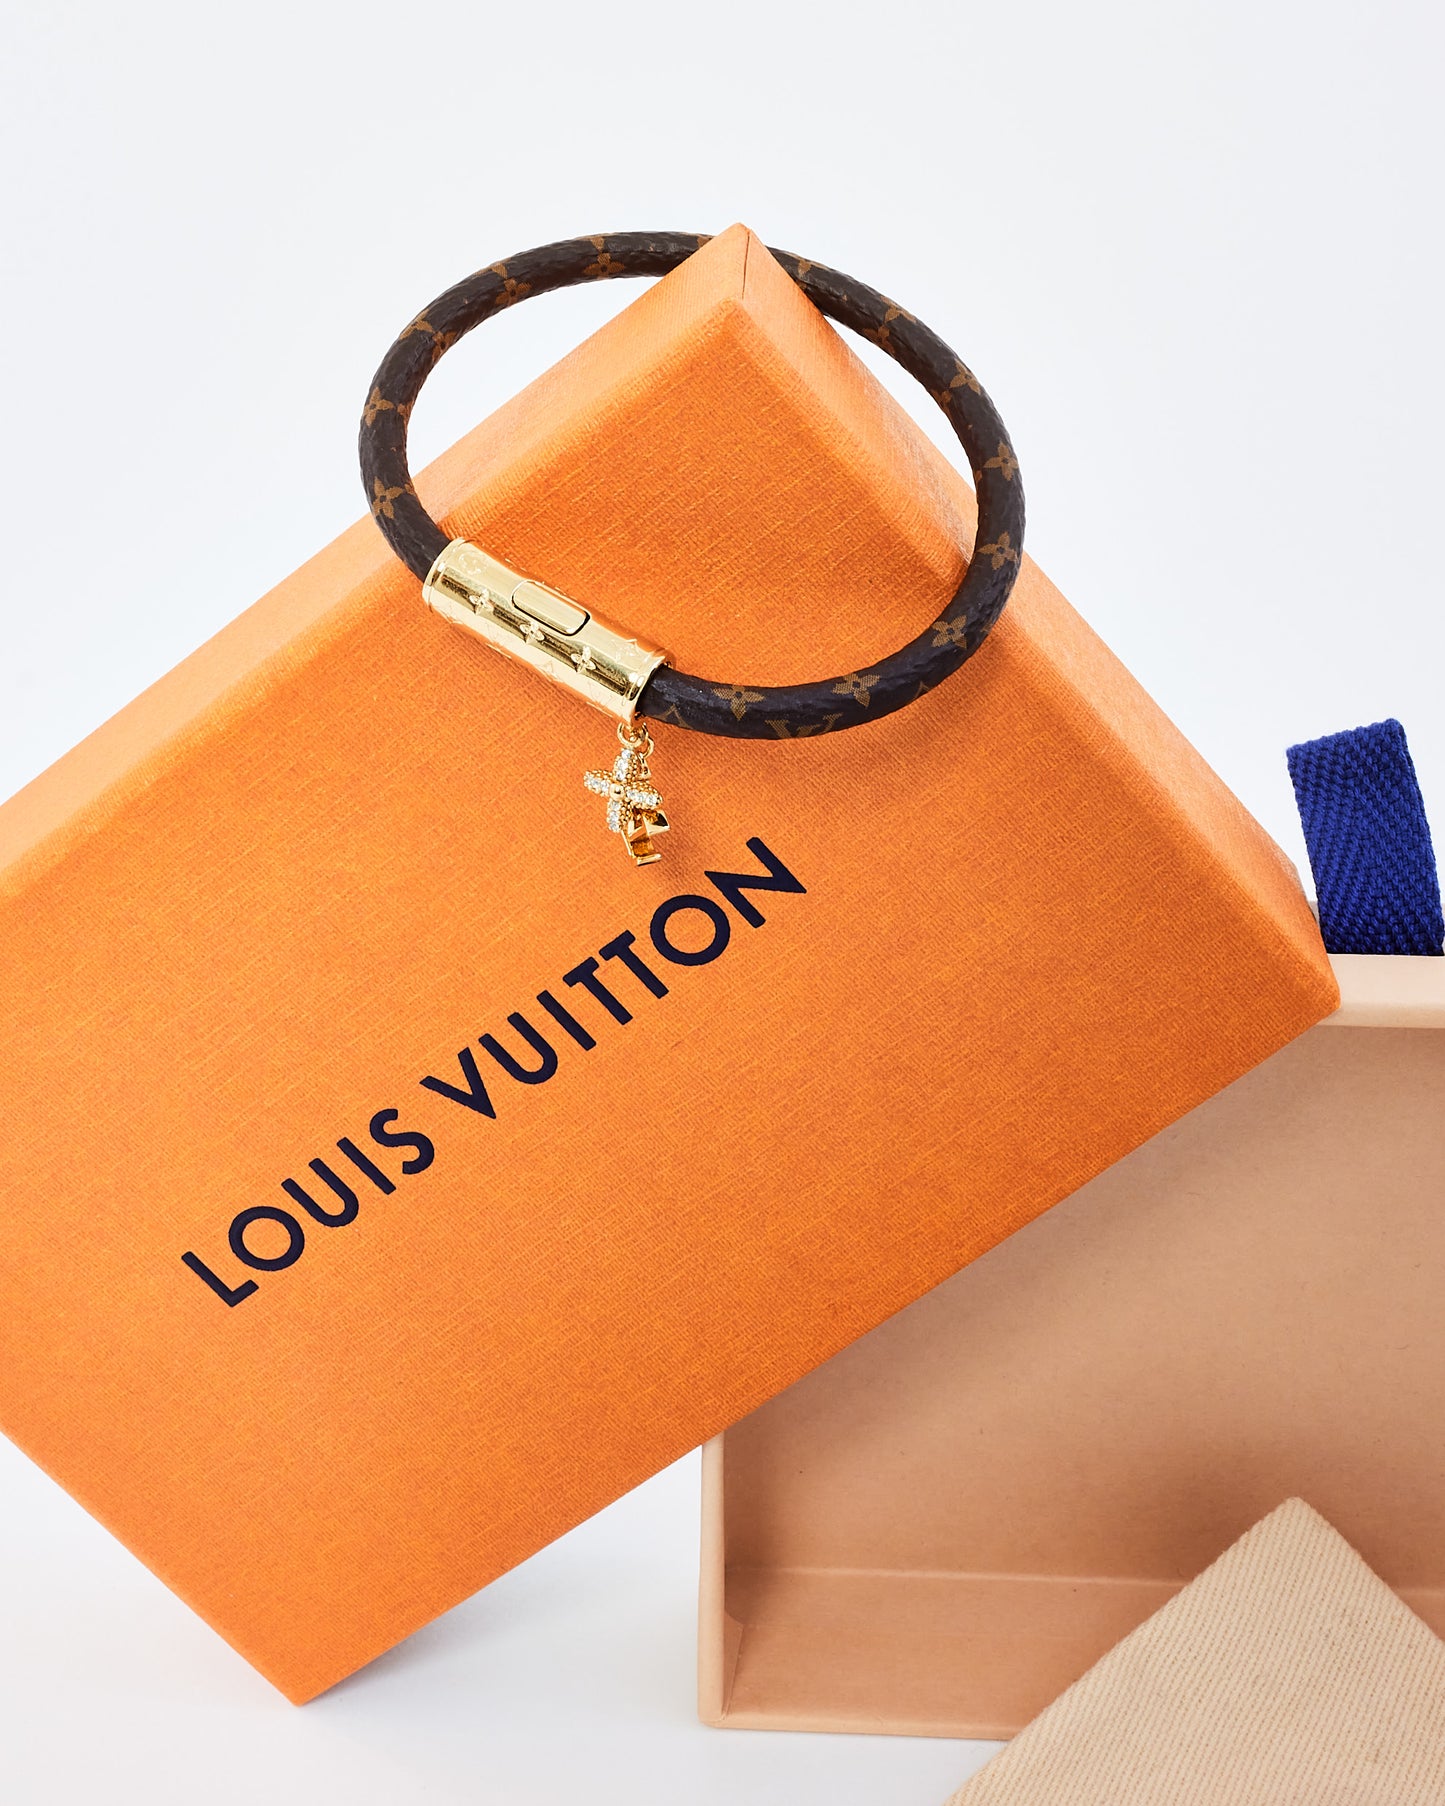 Louis Vuitton Monogram Canvas Bracelet with Charms